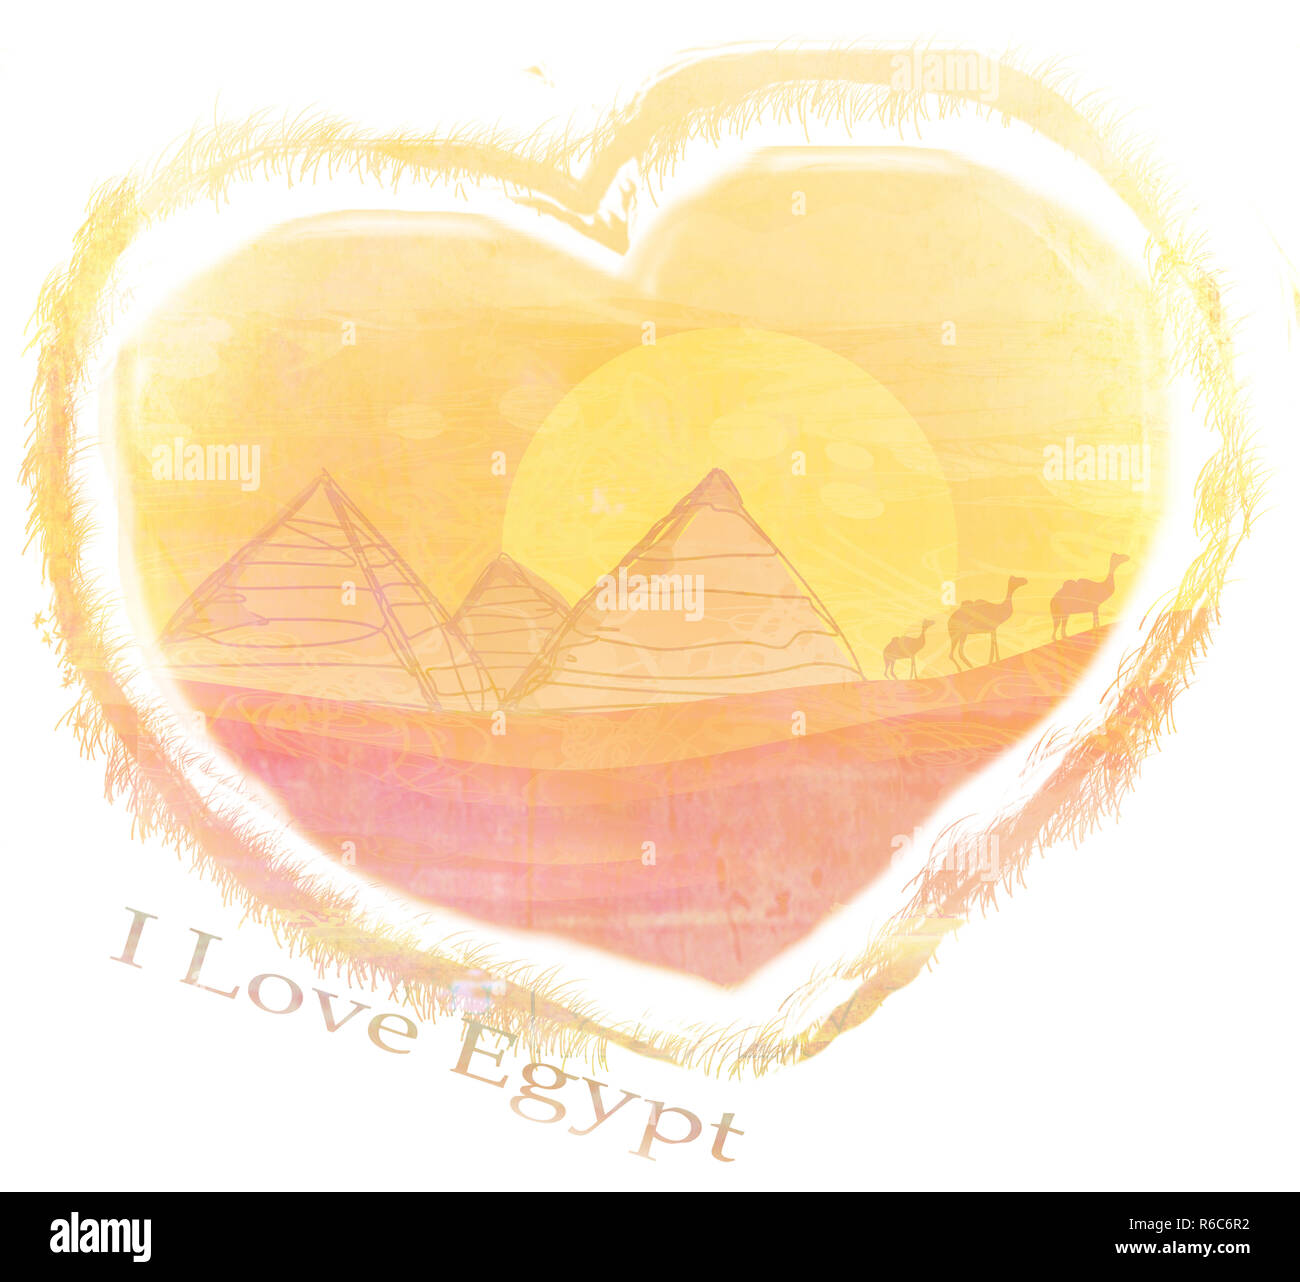 i love egypt design Stock Photo